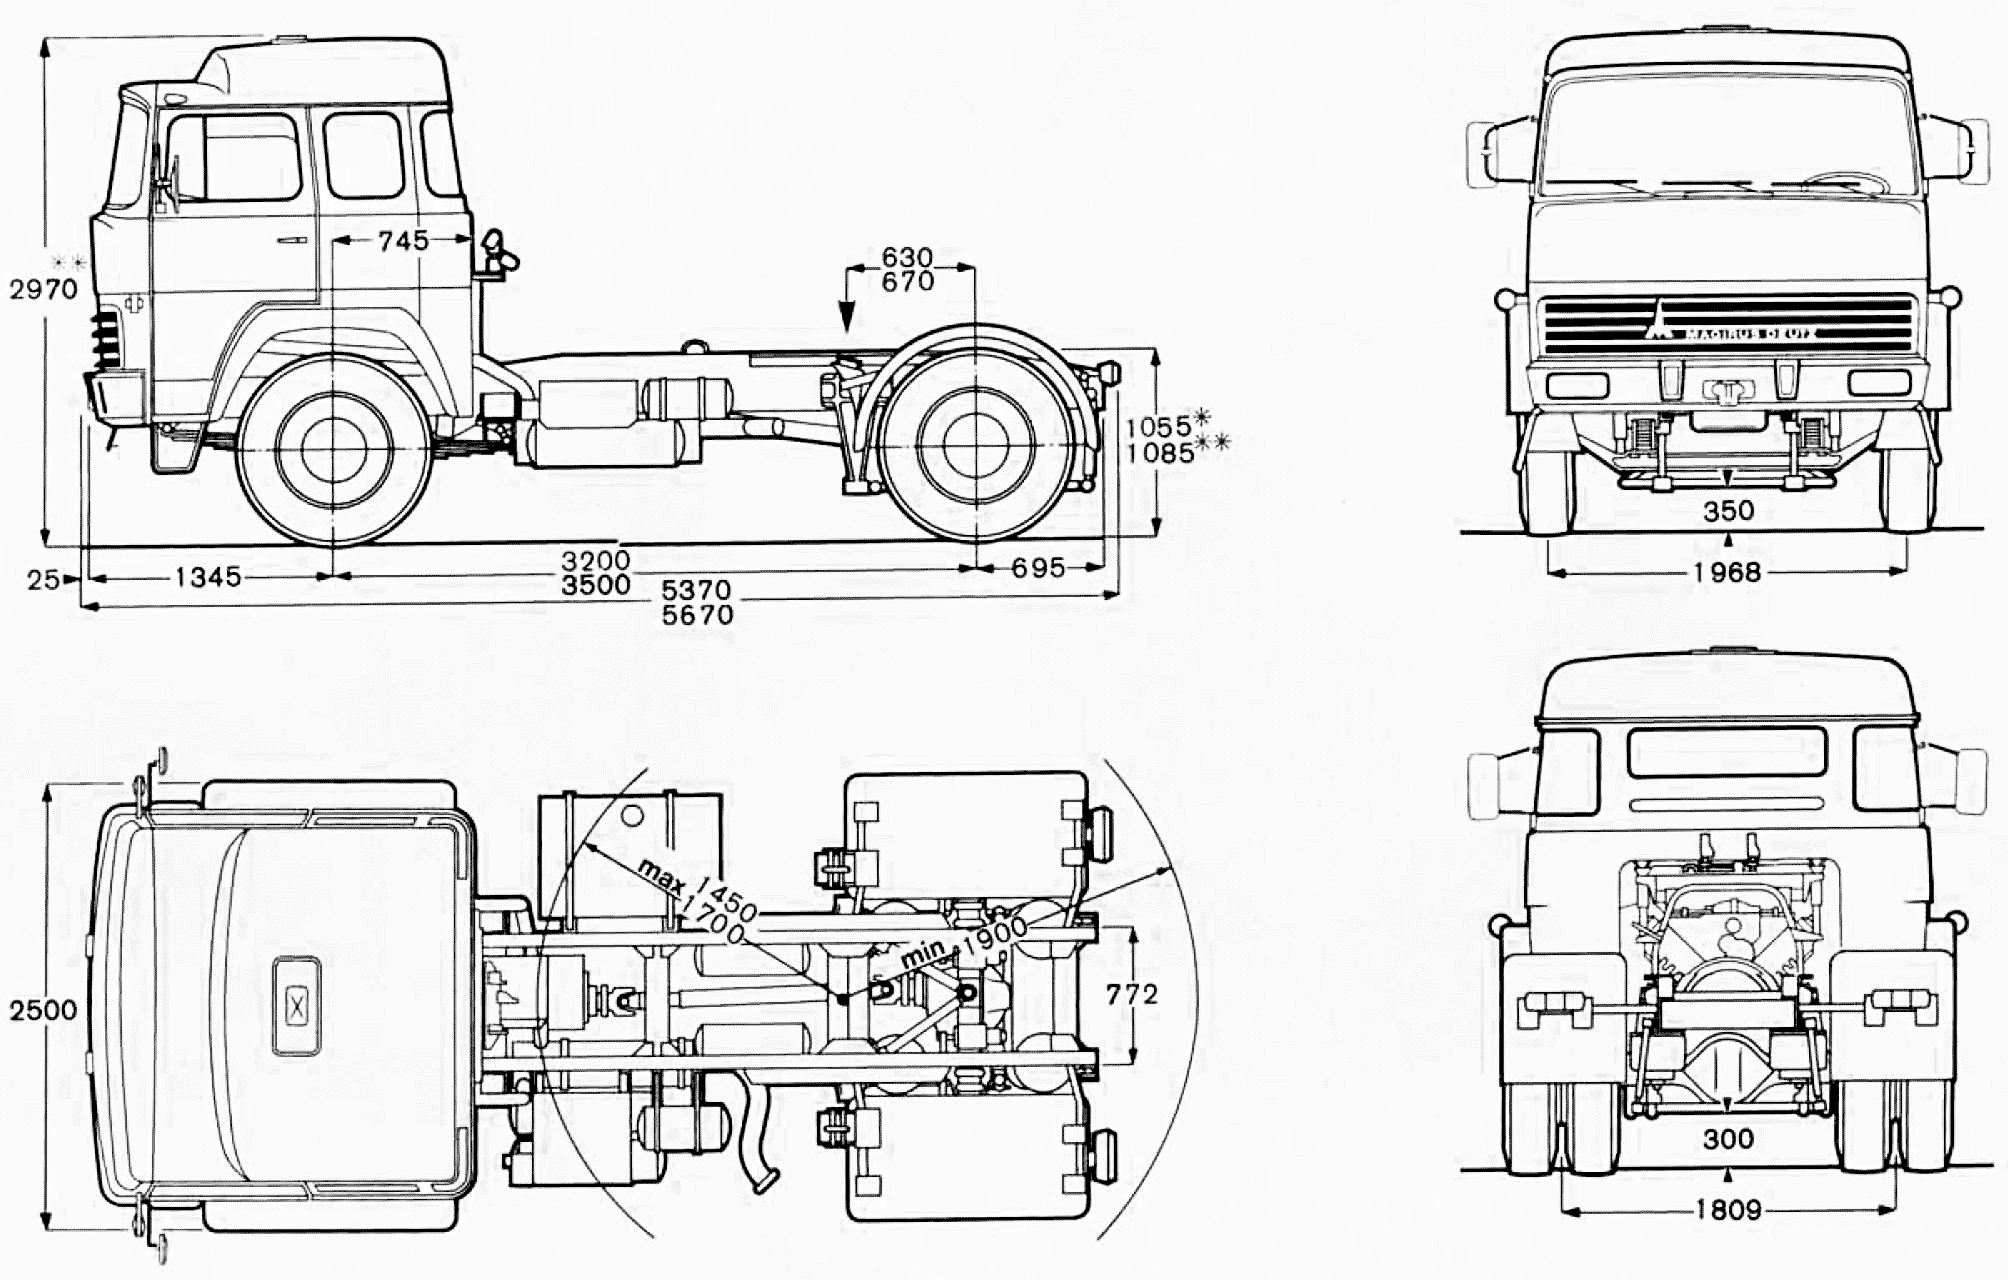 Magirus 310 D truck blueprint